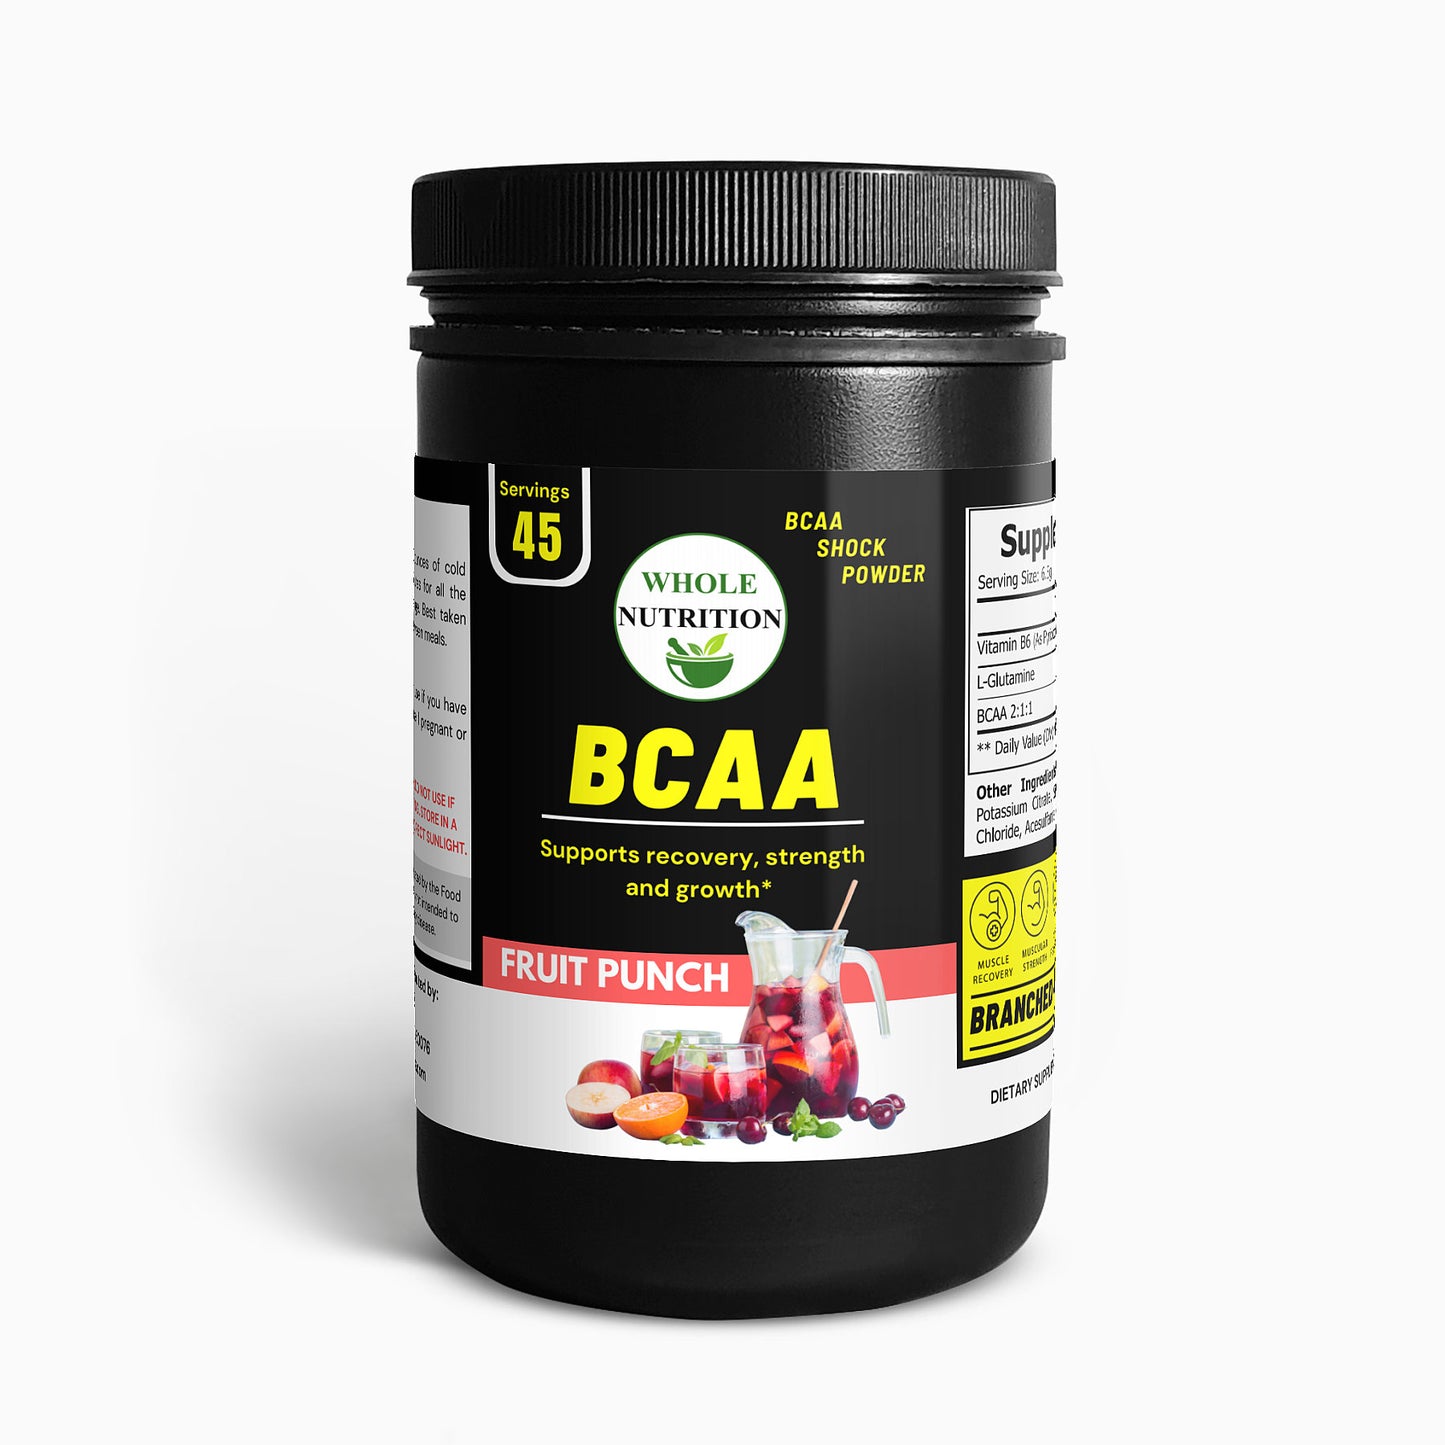 BCAA Shock Powder (Fruit Punch)